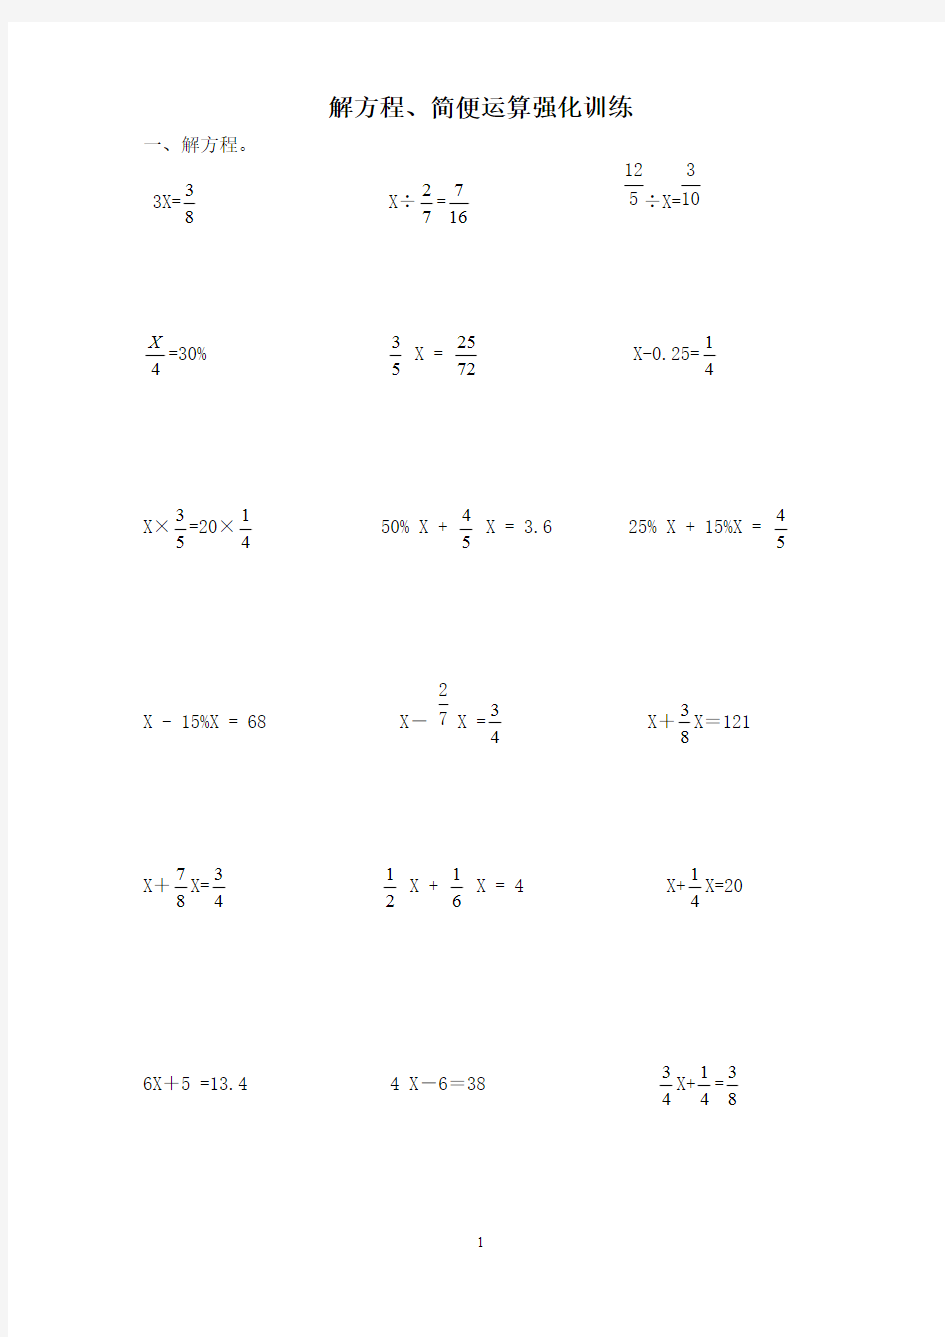 新人教版小学六年级数学练习题(解方程 简便运算)汇总